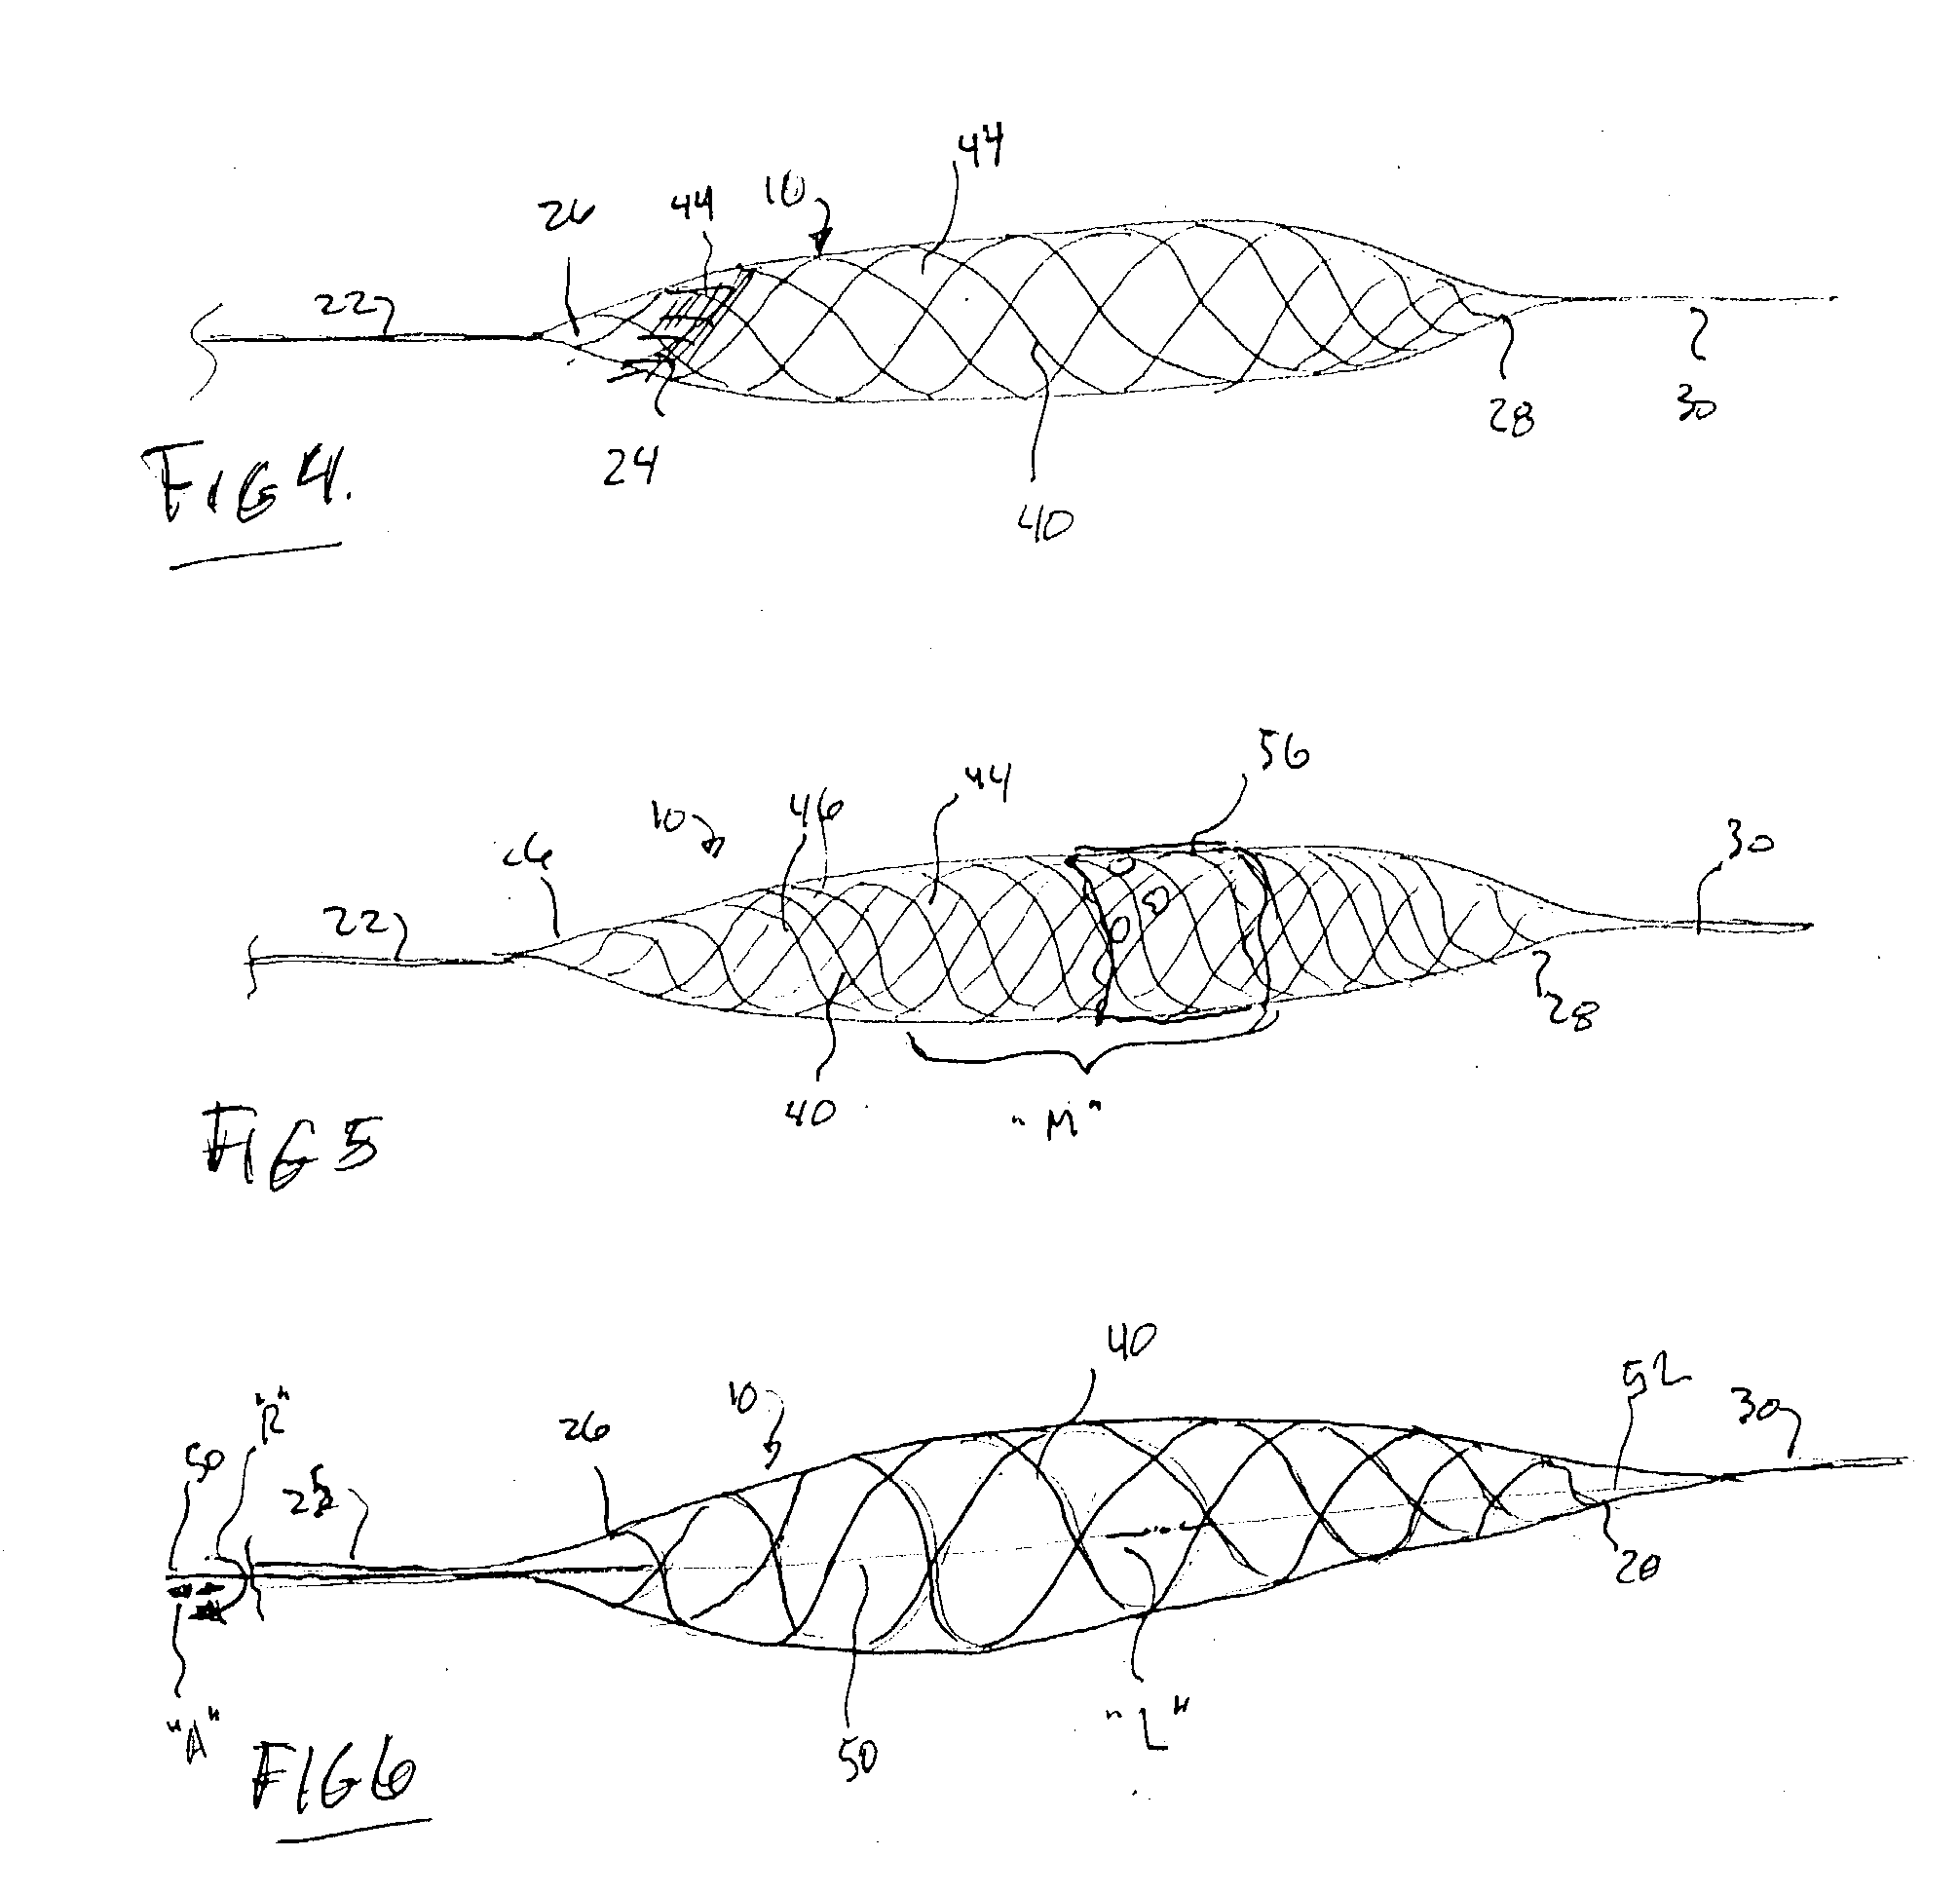 Aneurysm buttress arrangement